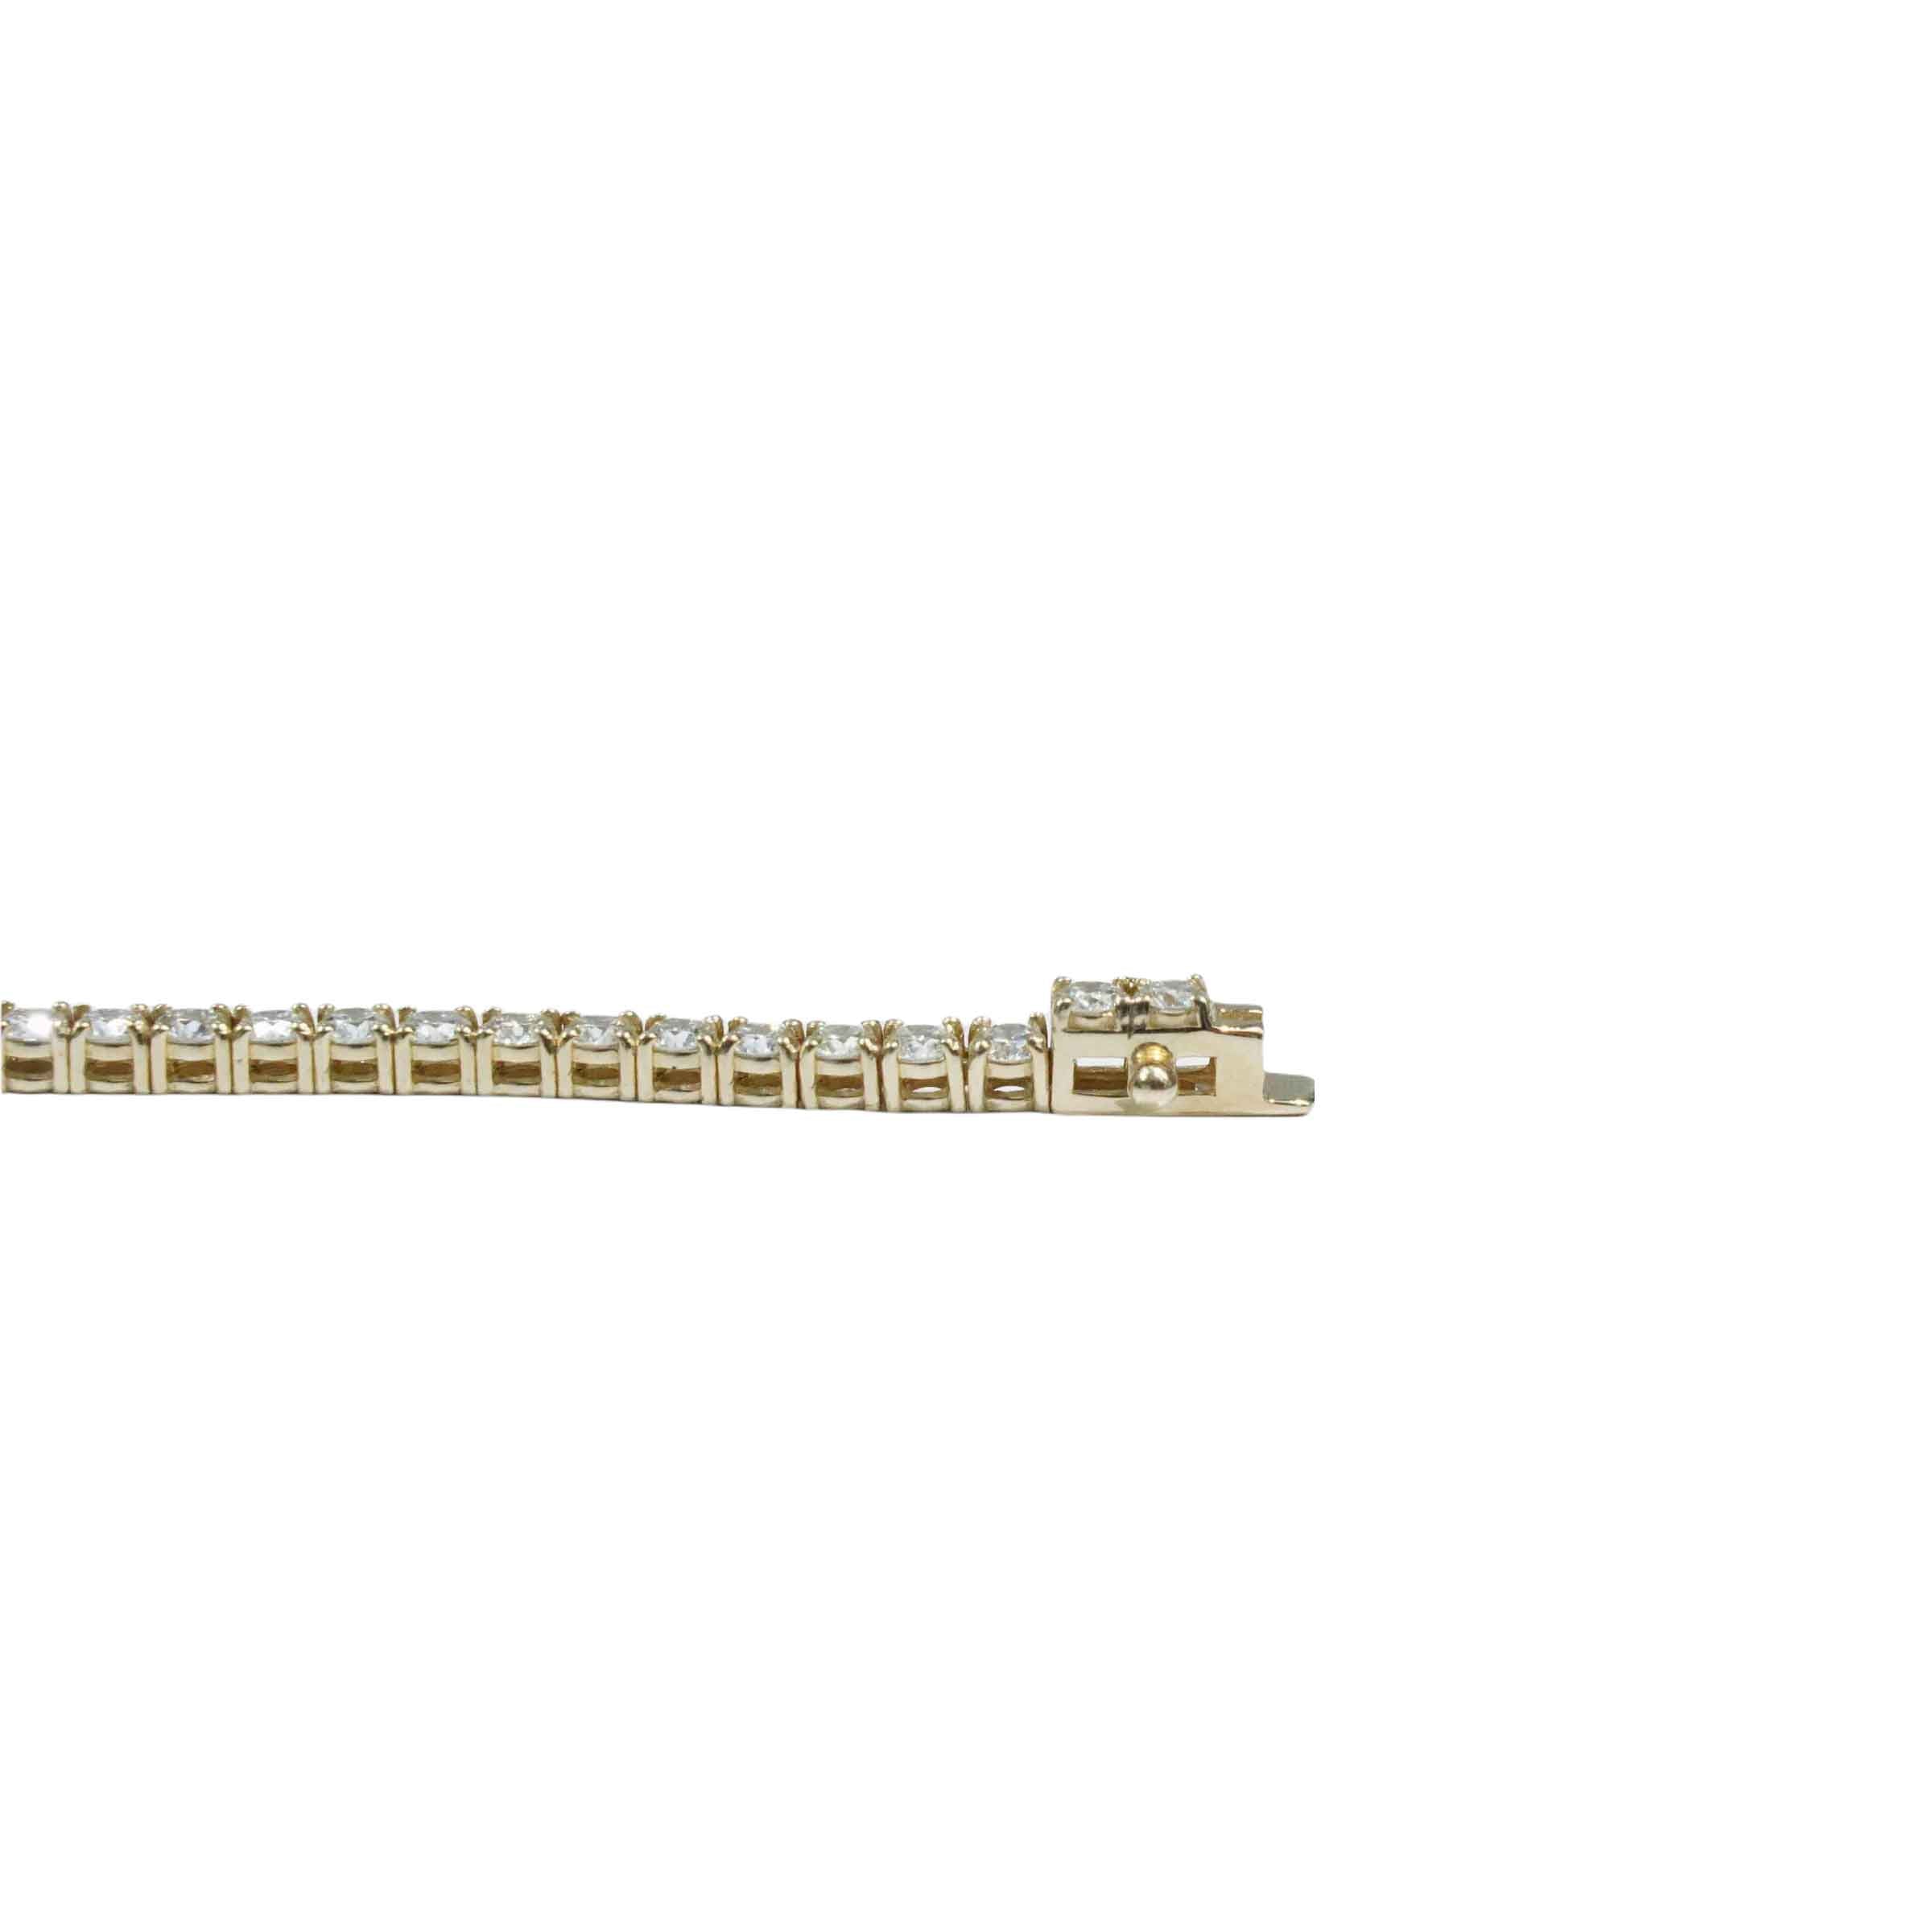 11.97 Carats t.w. Diamond Tennis Bracelet 14K Yellow Gold D-F Color